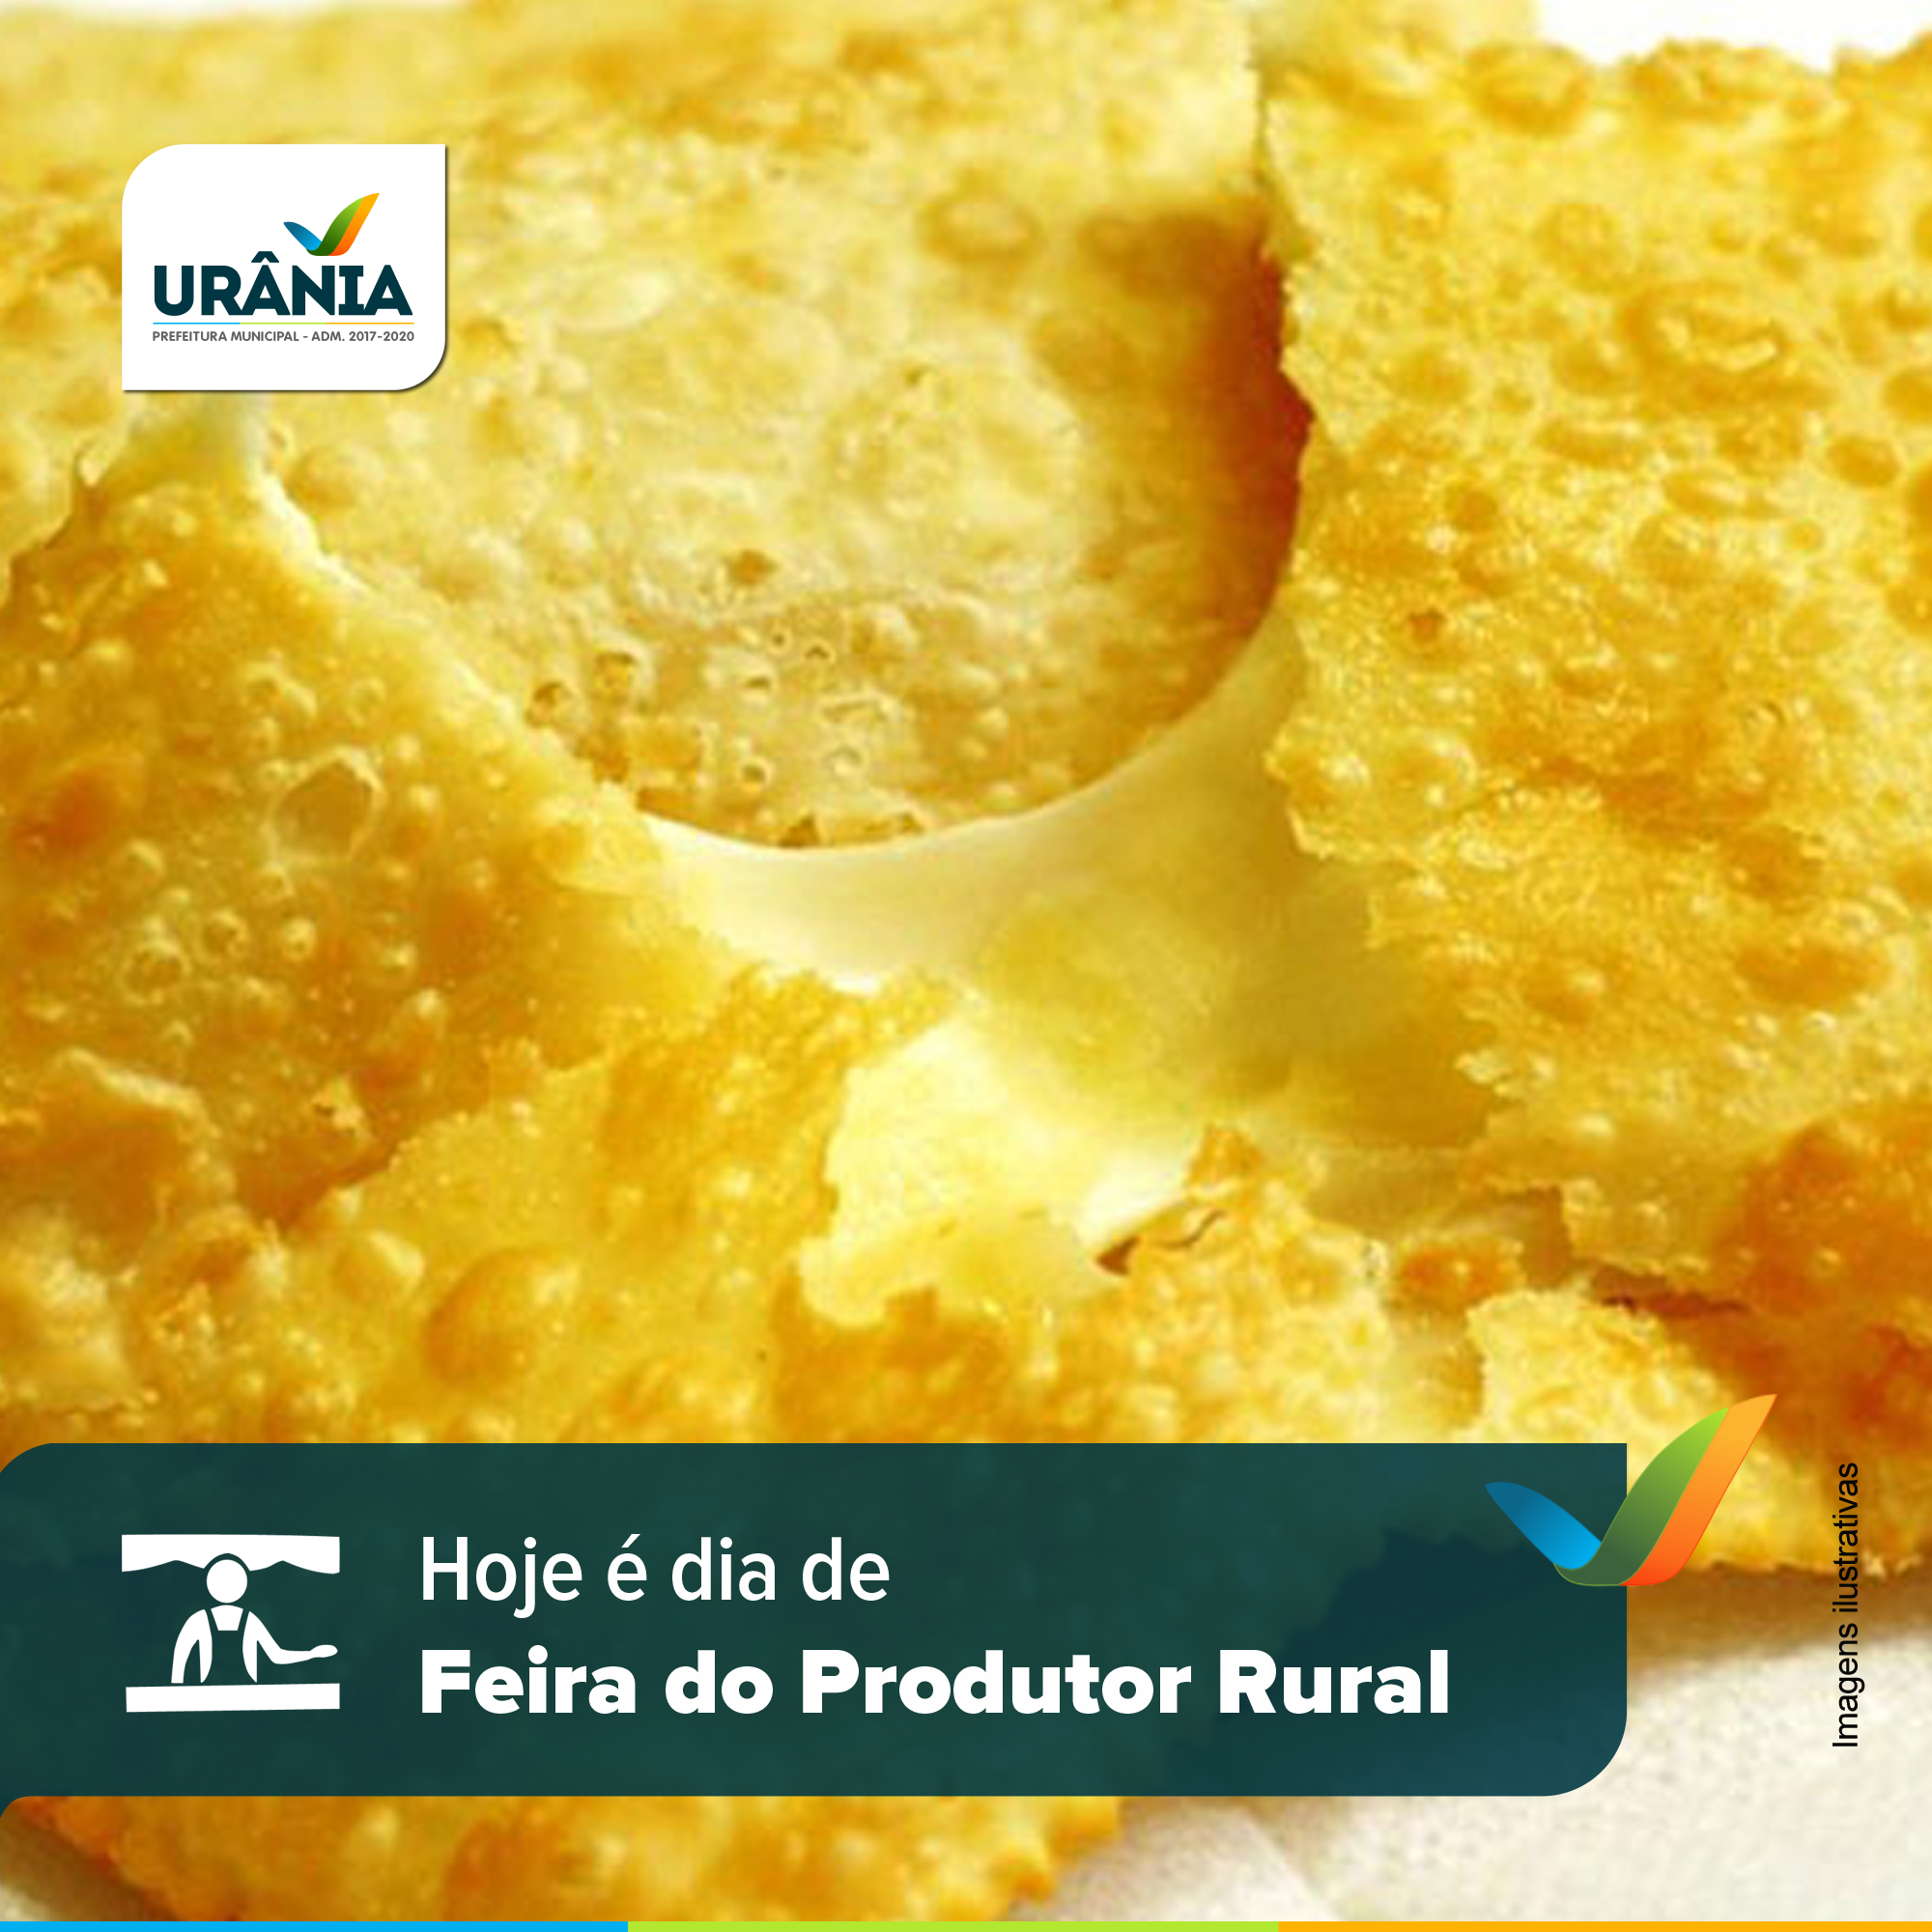  Dia Feira do Produtor Rural de Urânia